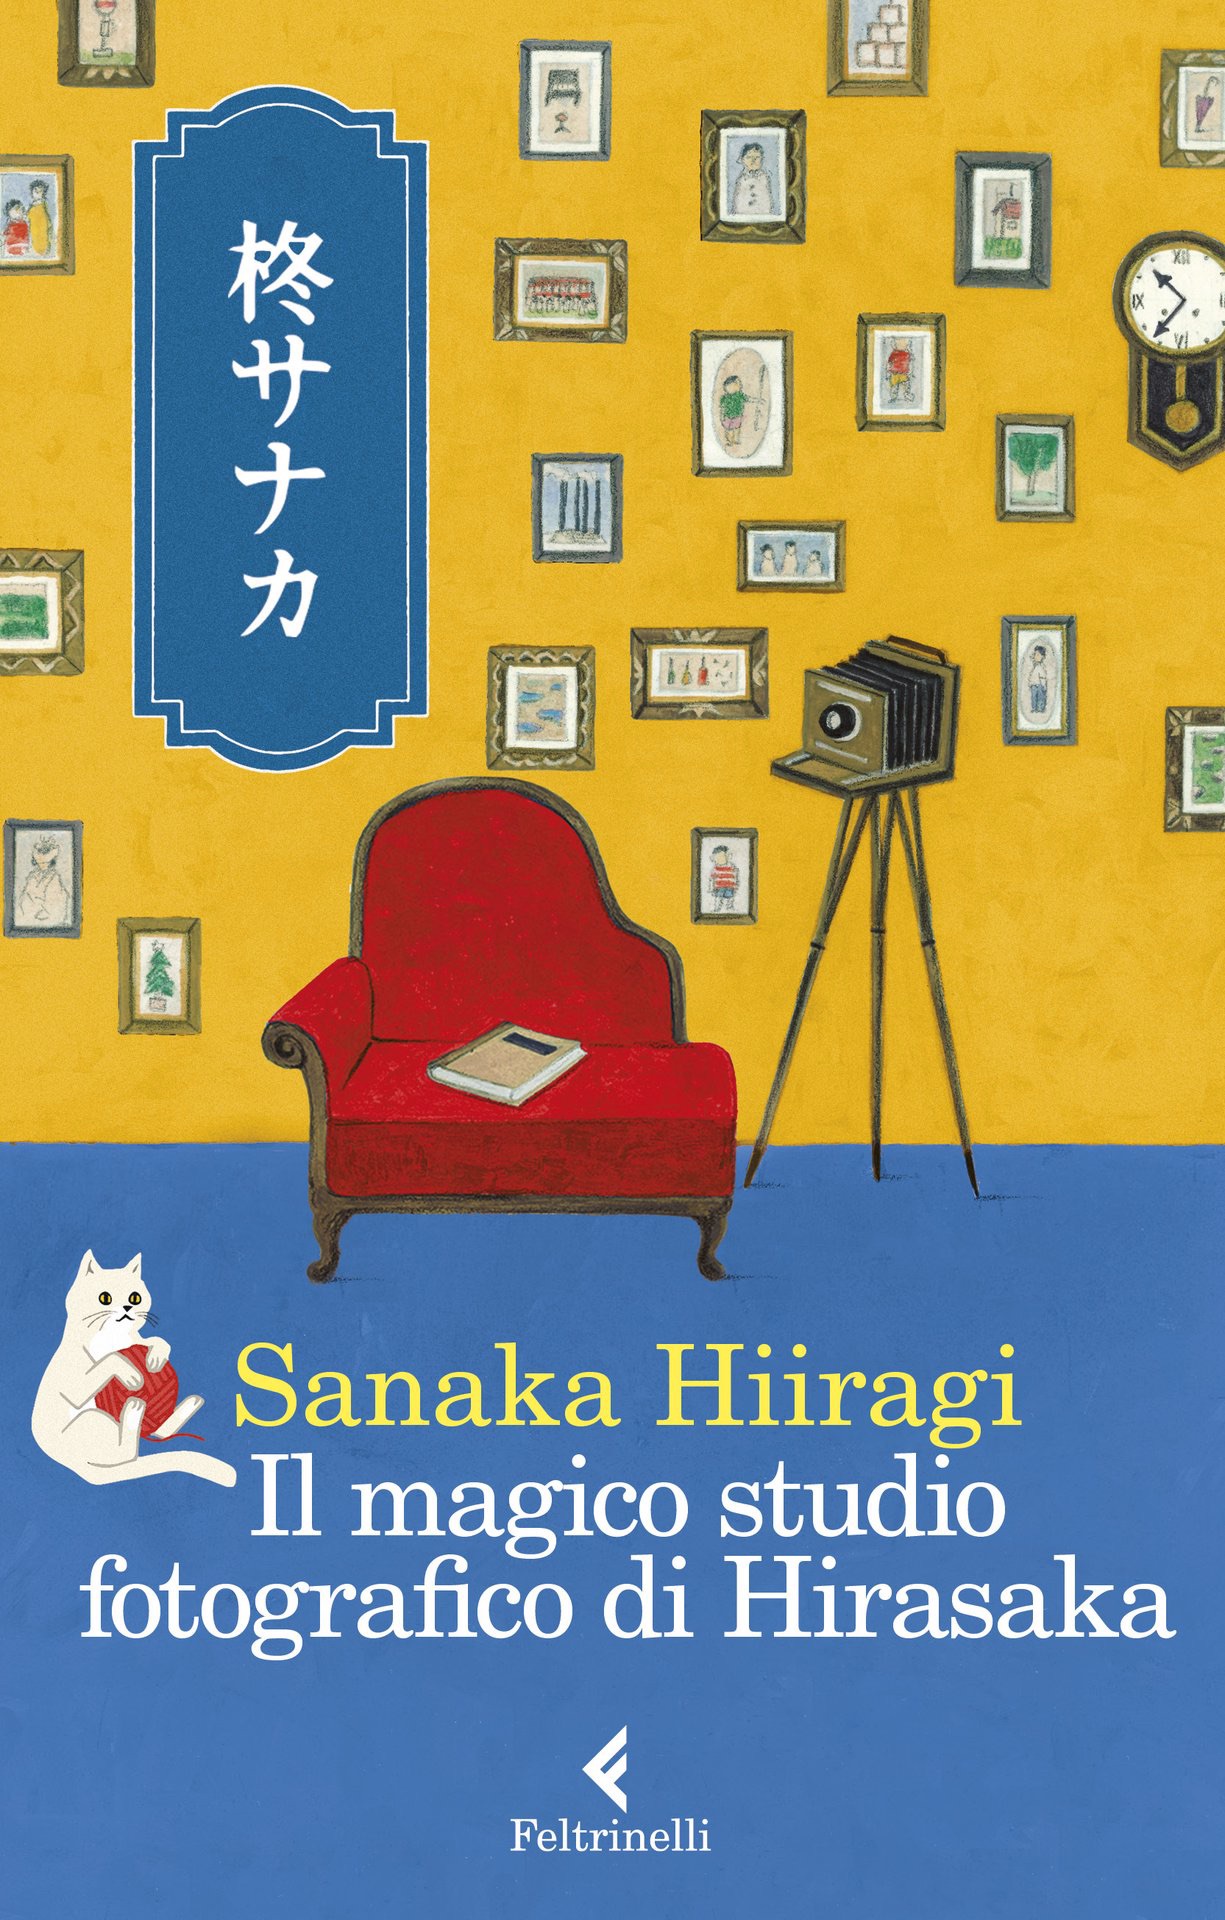 Salotto letterario Il magico studio fotografico di Hirasaka di Sanaka Hiiragi